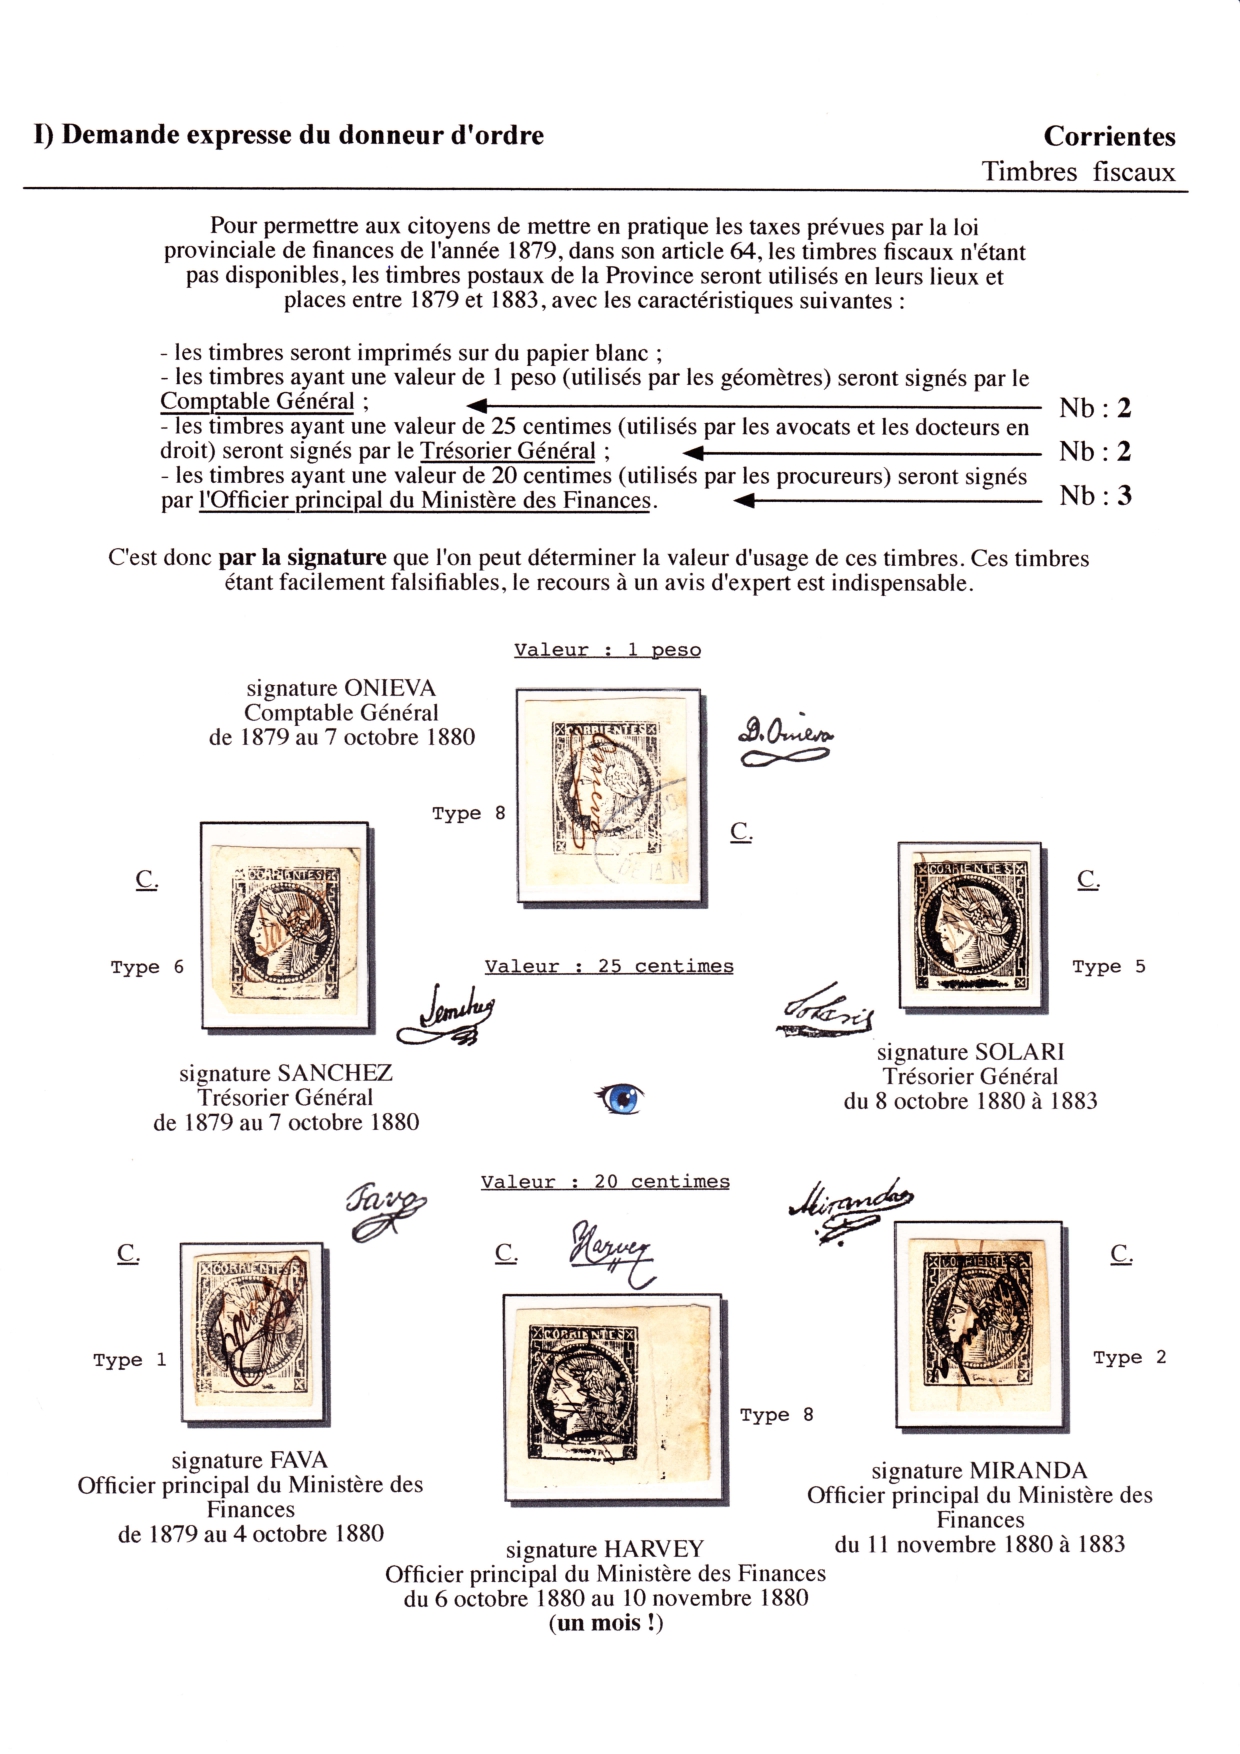 Les d��buts des timbres sans valeur faciale apparente p. 21